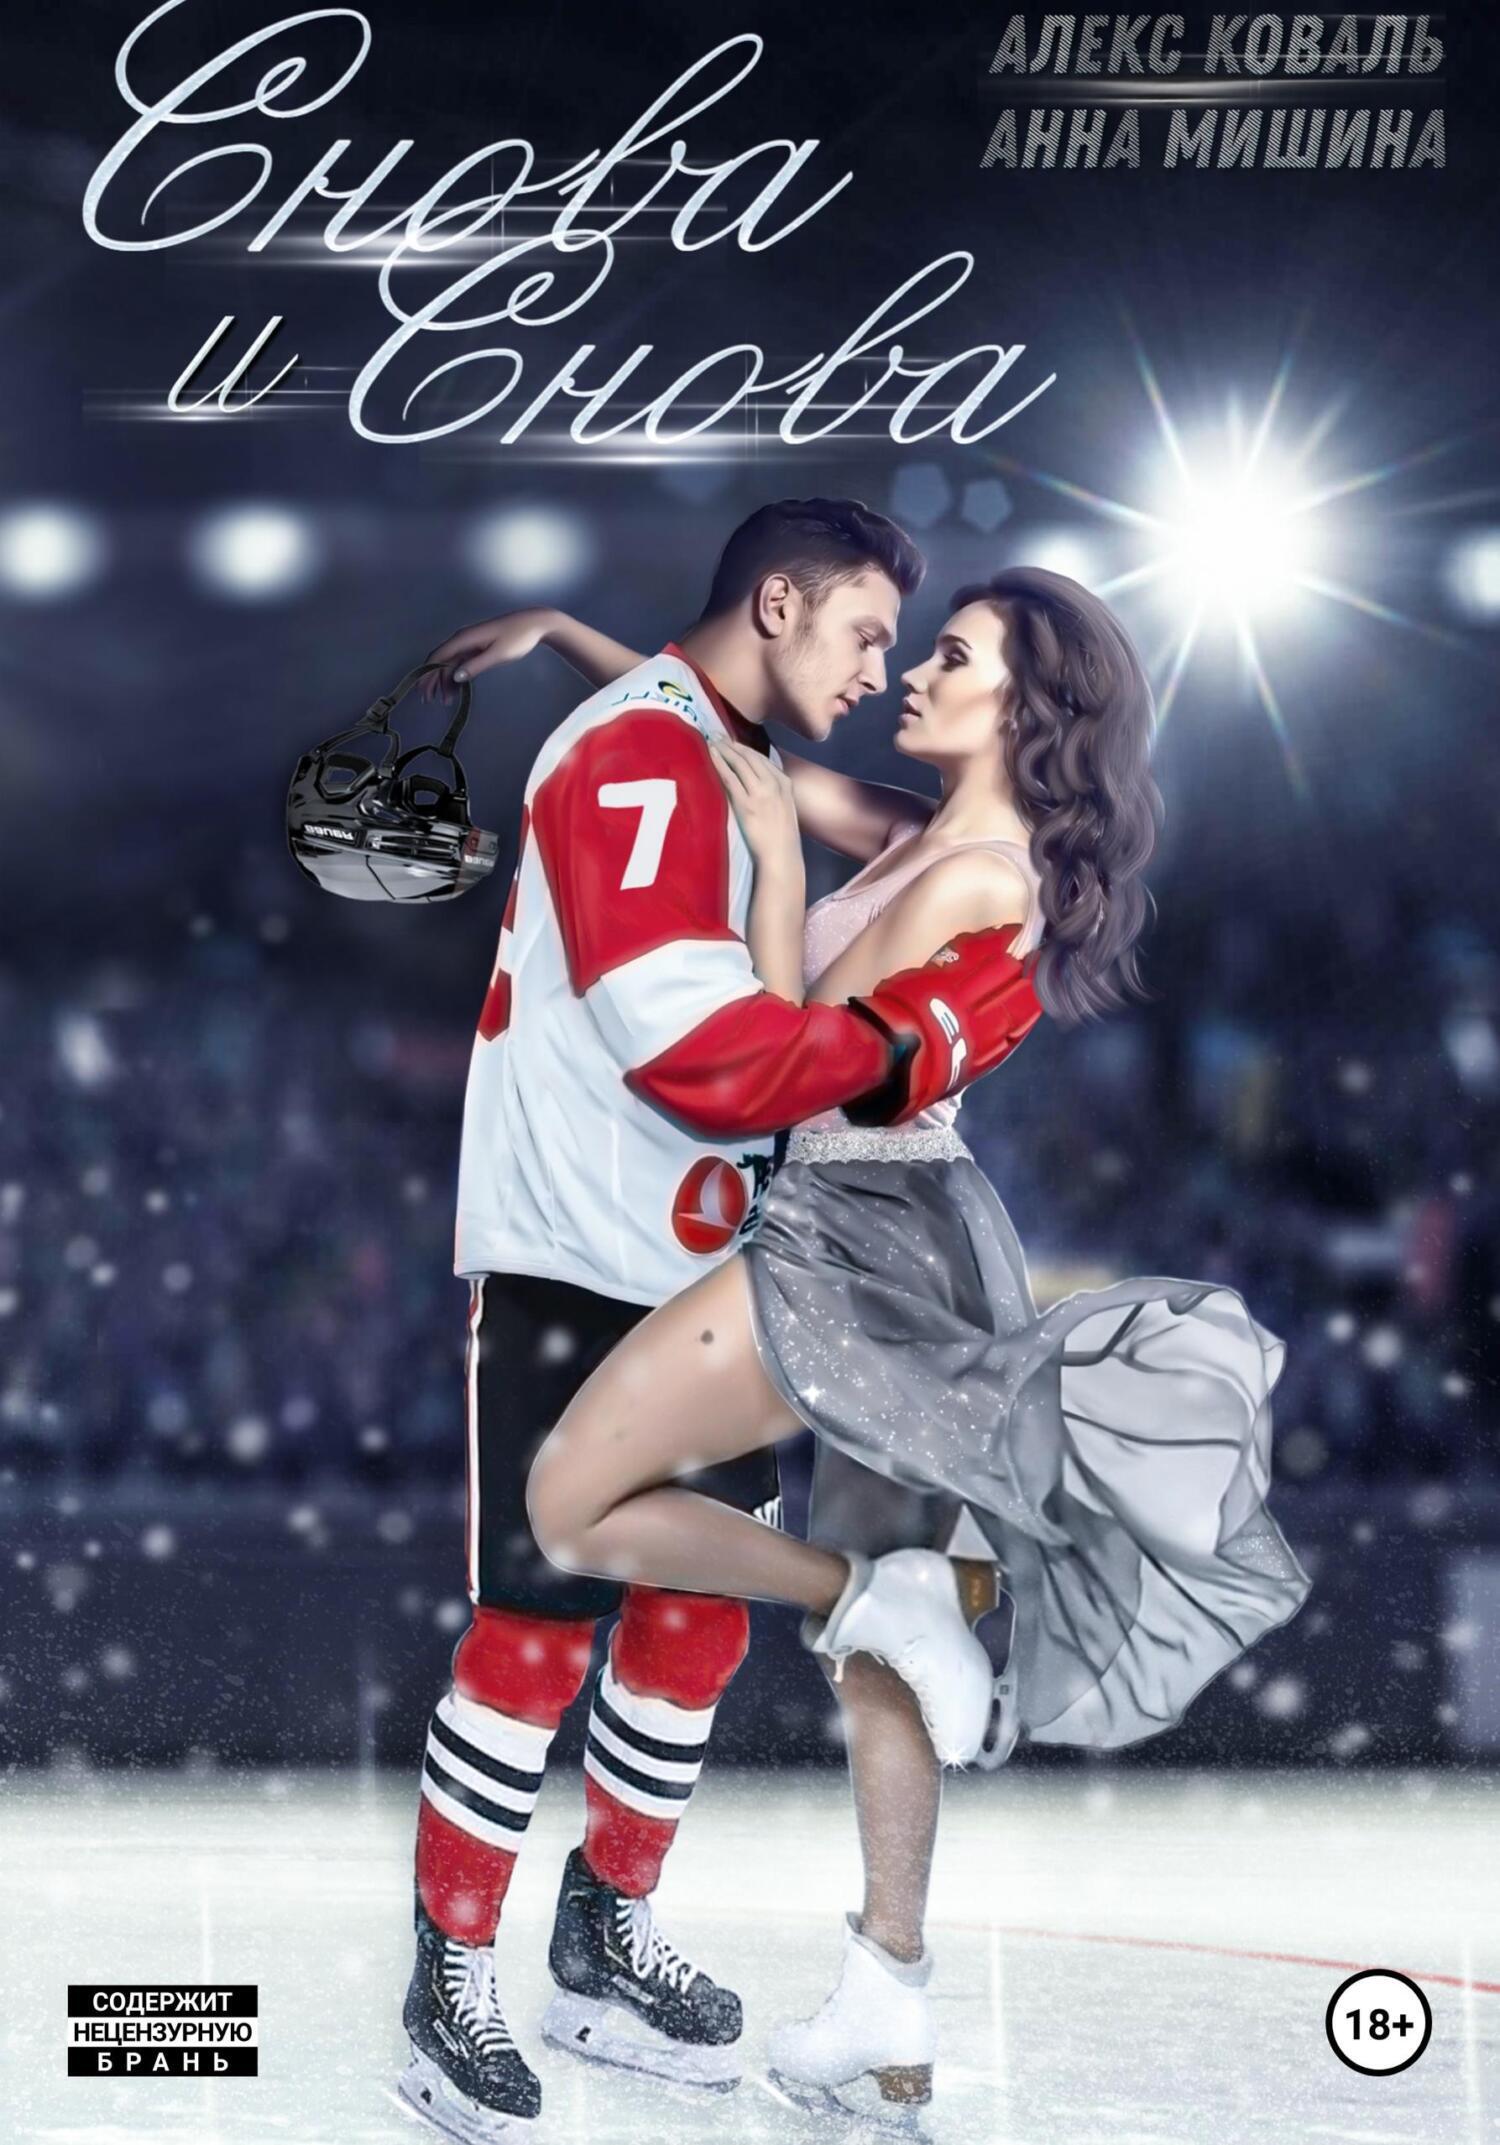 Читать любовь друзей. Современные любовные романы. Книга про хоккеистов и любовь. Современные романы про хоккей. Современные любовные романы хоккей.